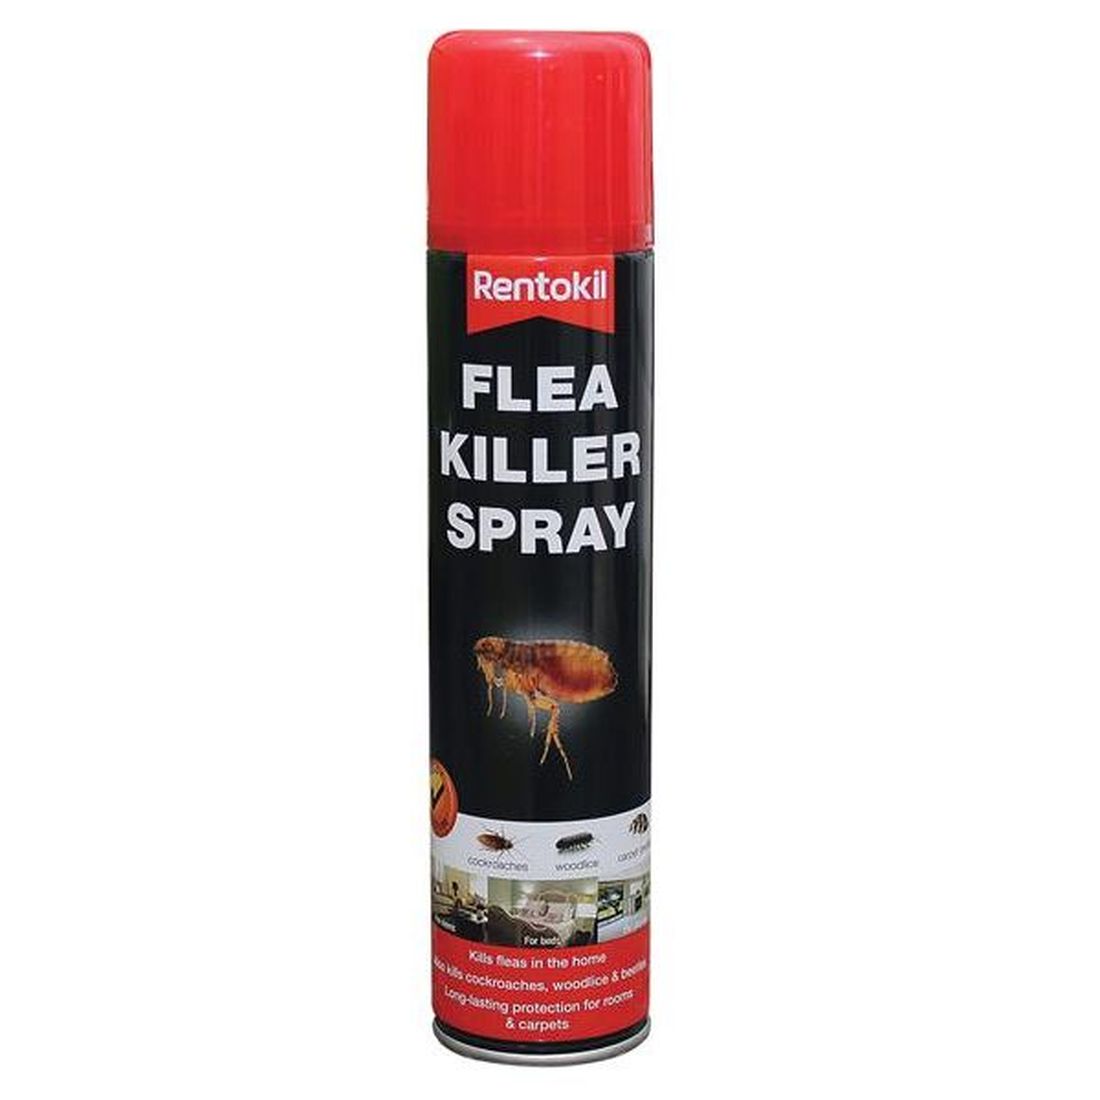 Rentokil Flea Killer Spray                 